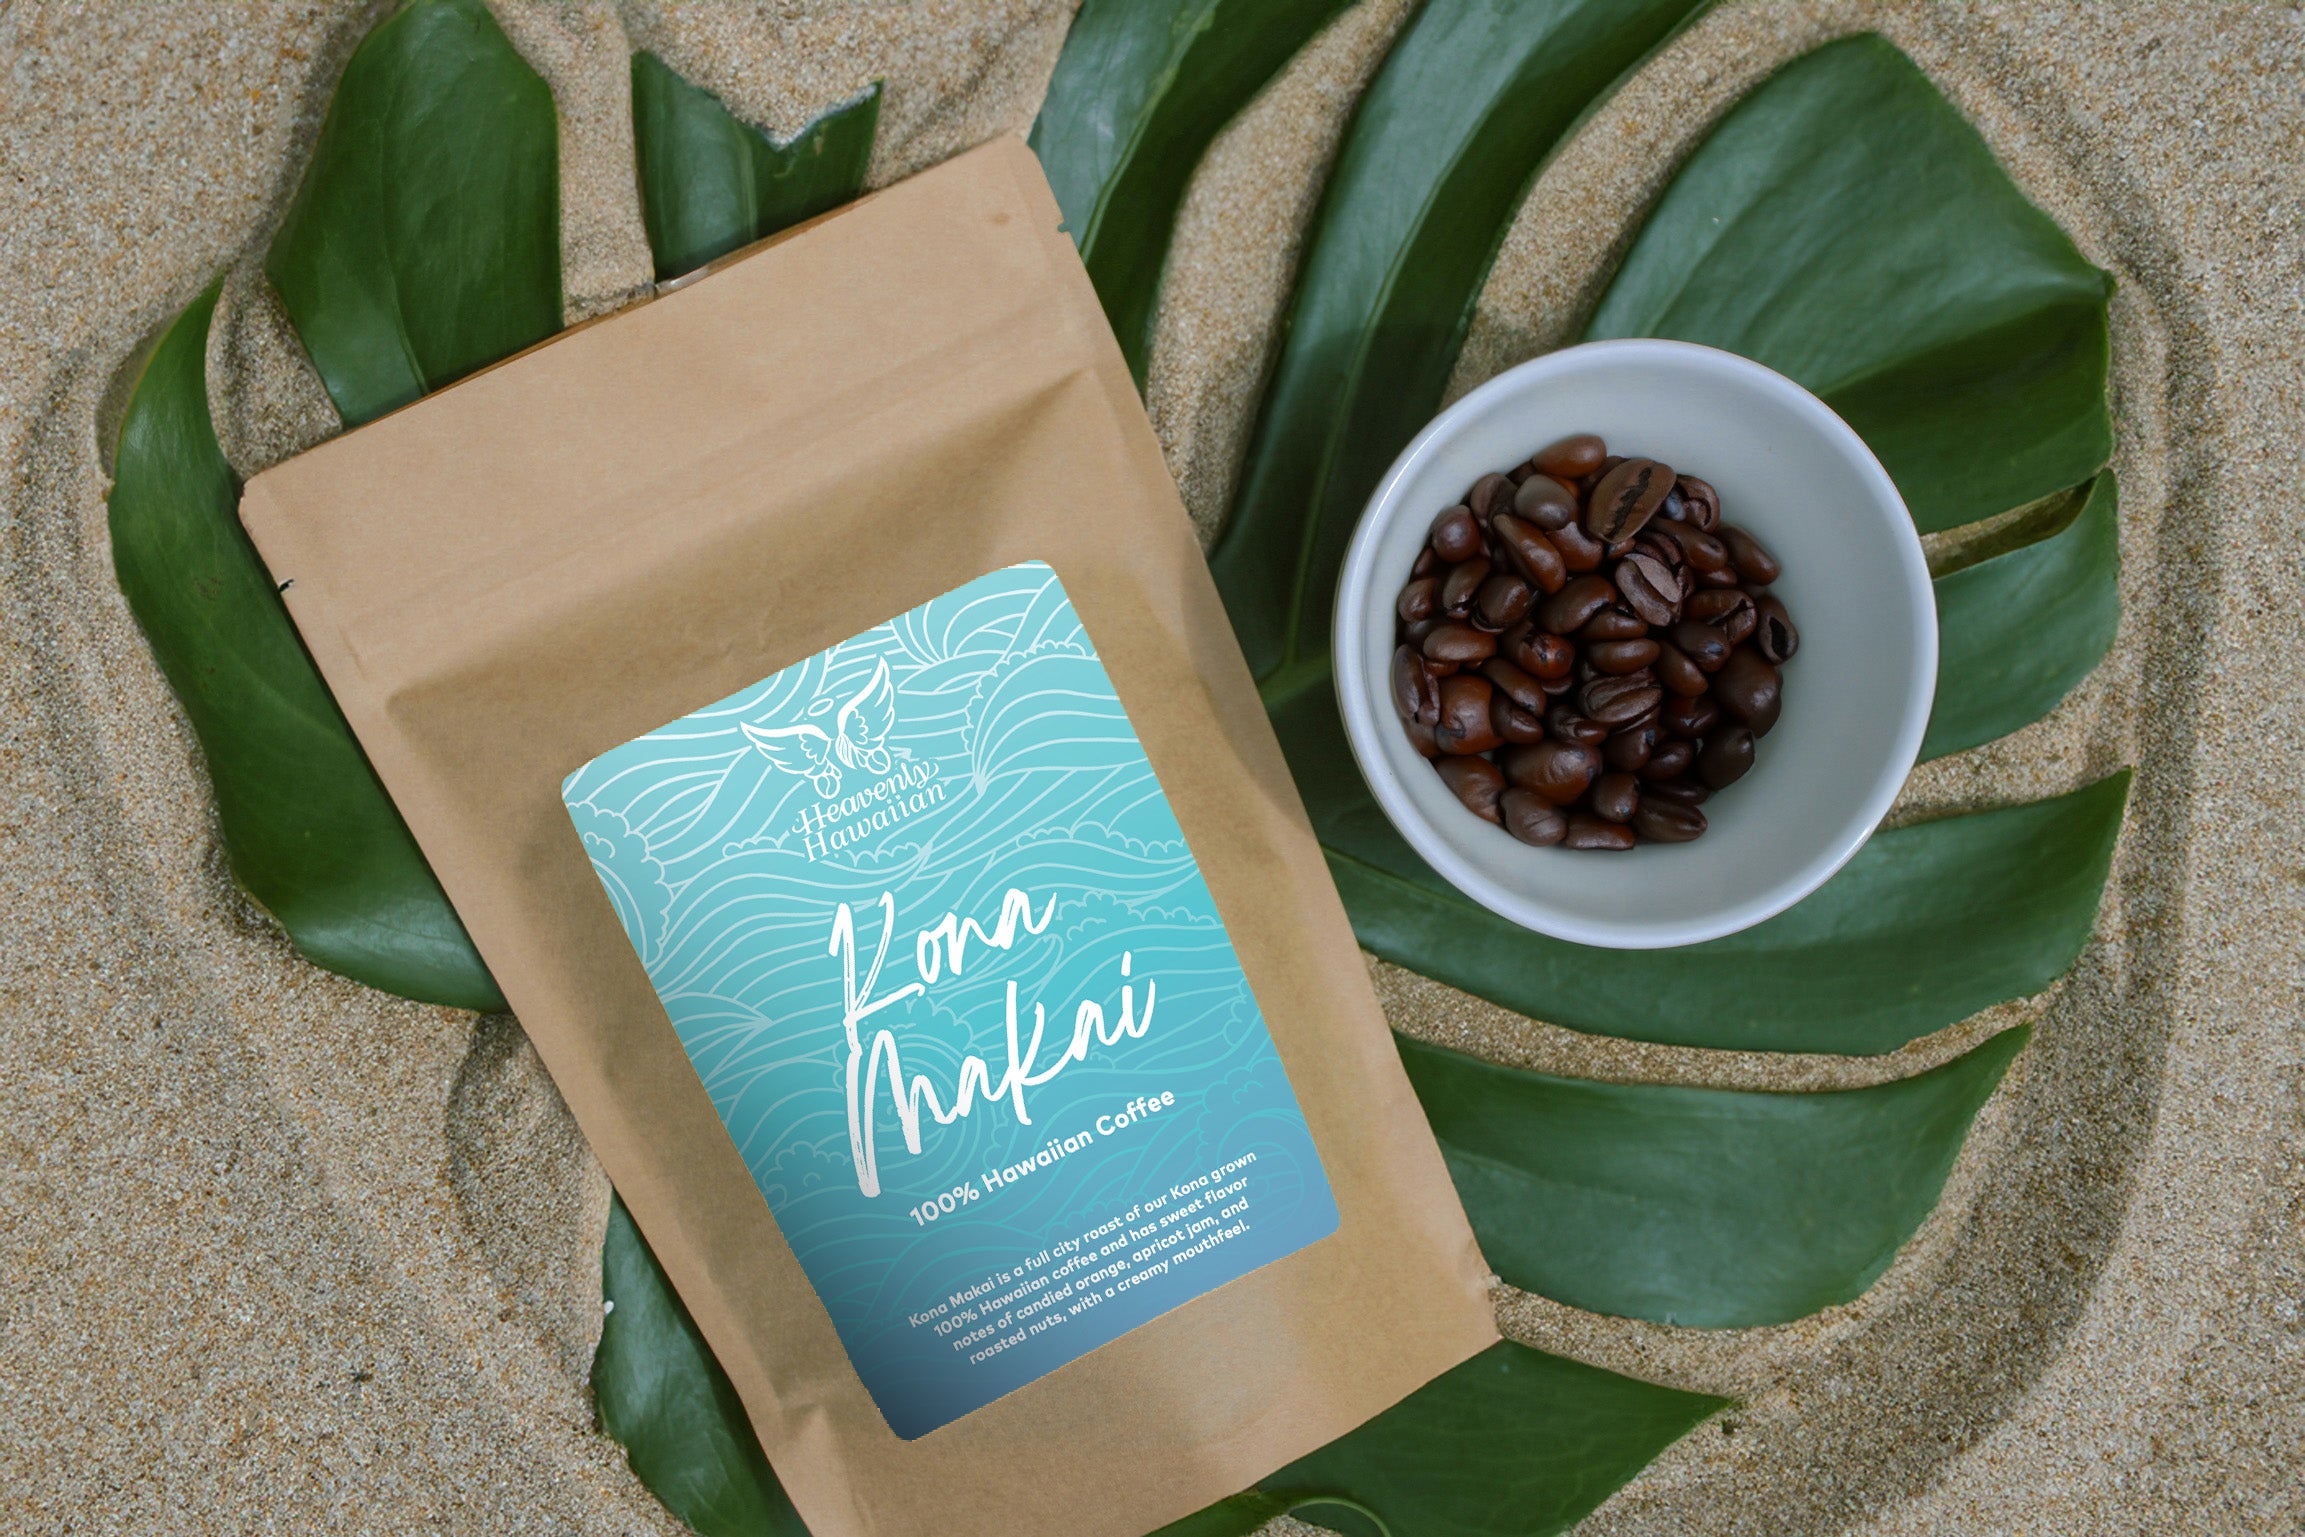 Kona Makai | 100% Hawaiian Coffee